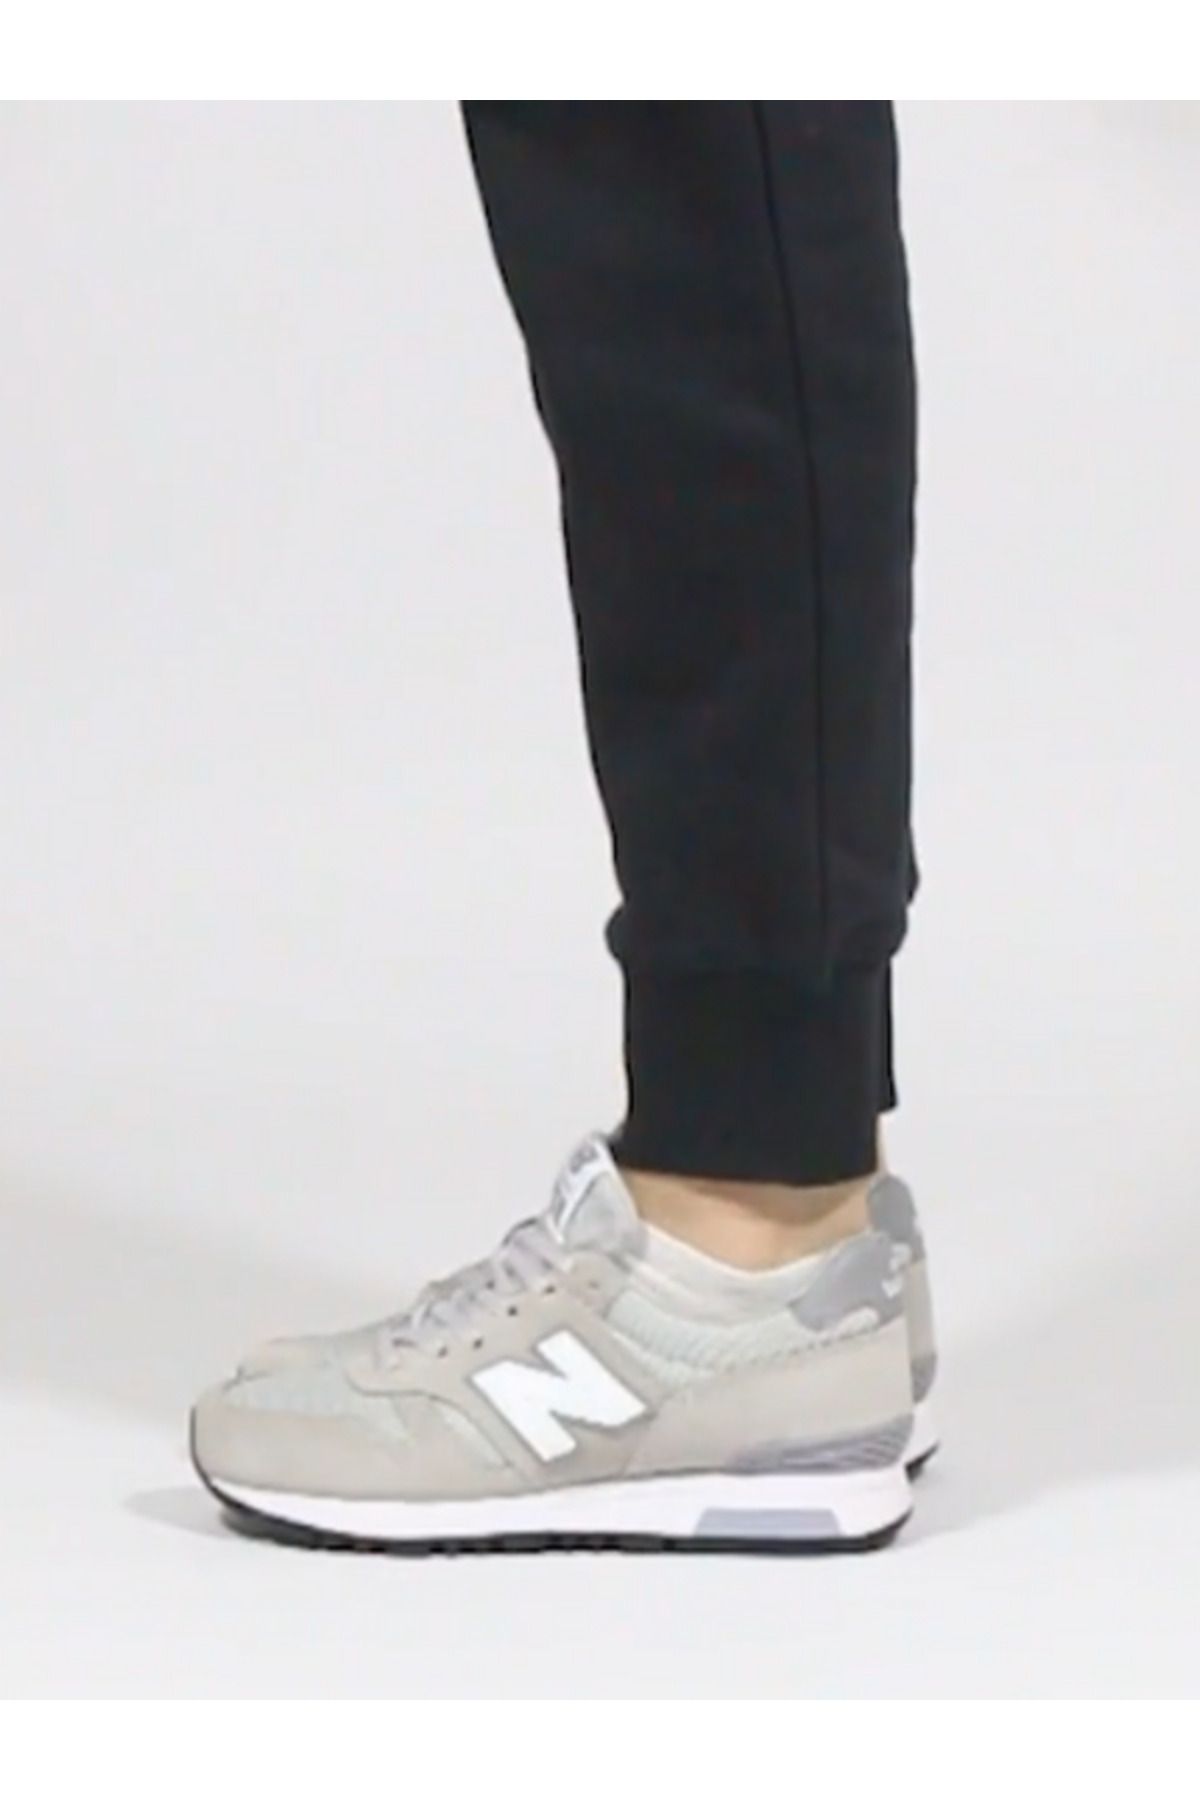 New Balance Açık Gri Beyaz Kadın Sneaker Günlük Spor Ayakkabı